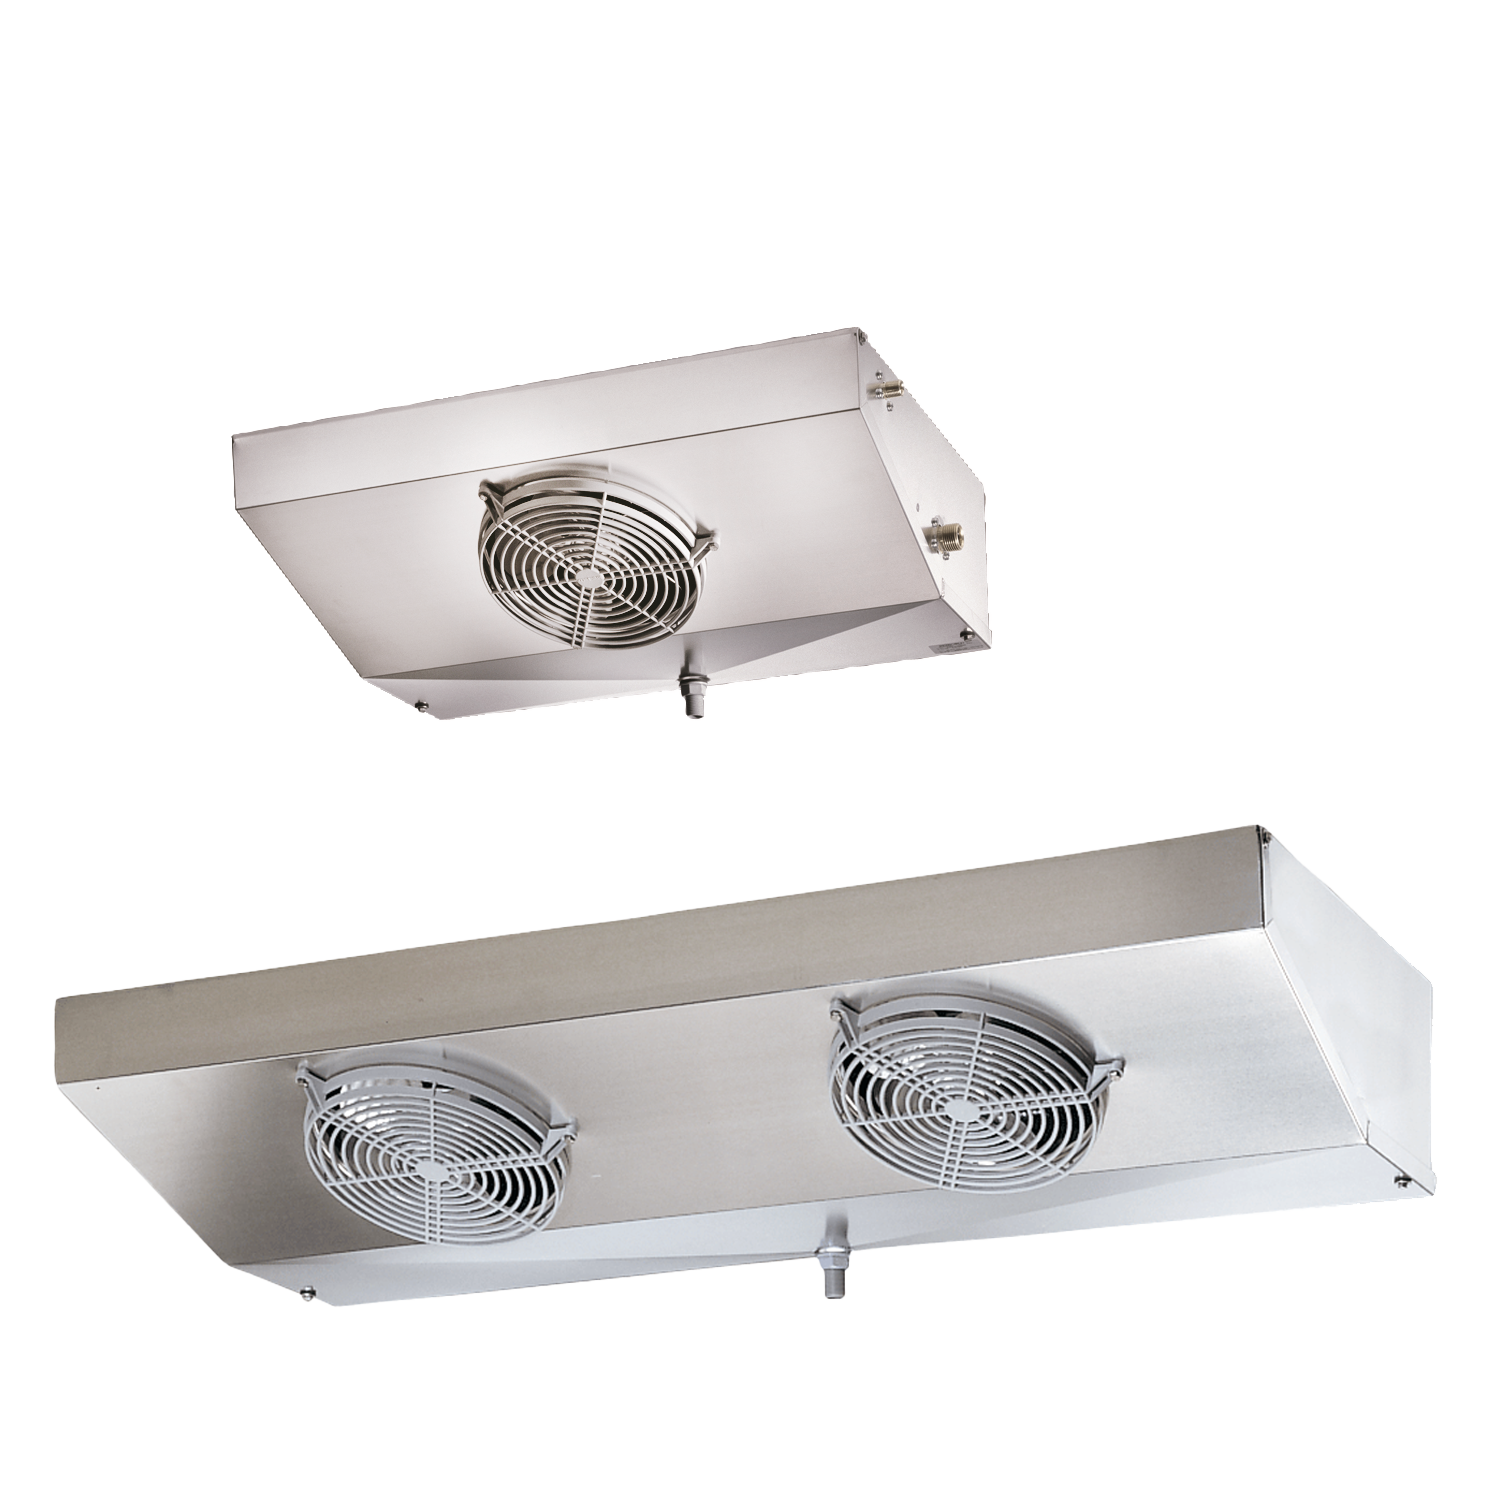 RSV: Flat ceiling evaporator